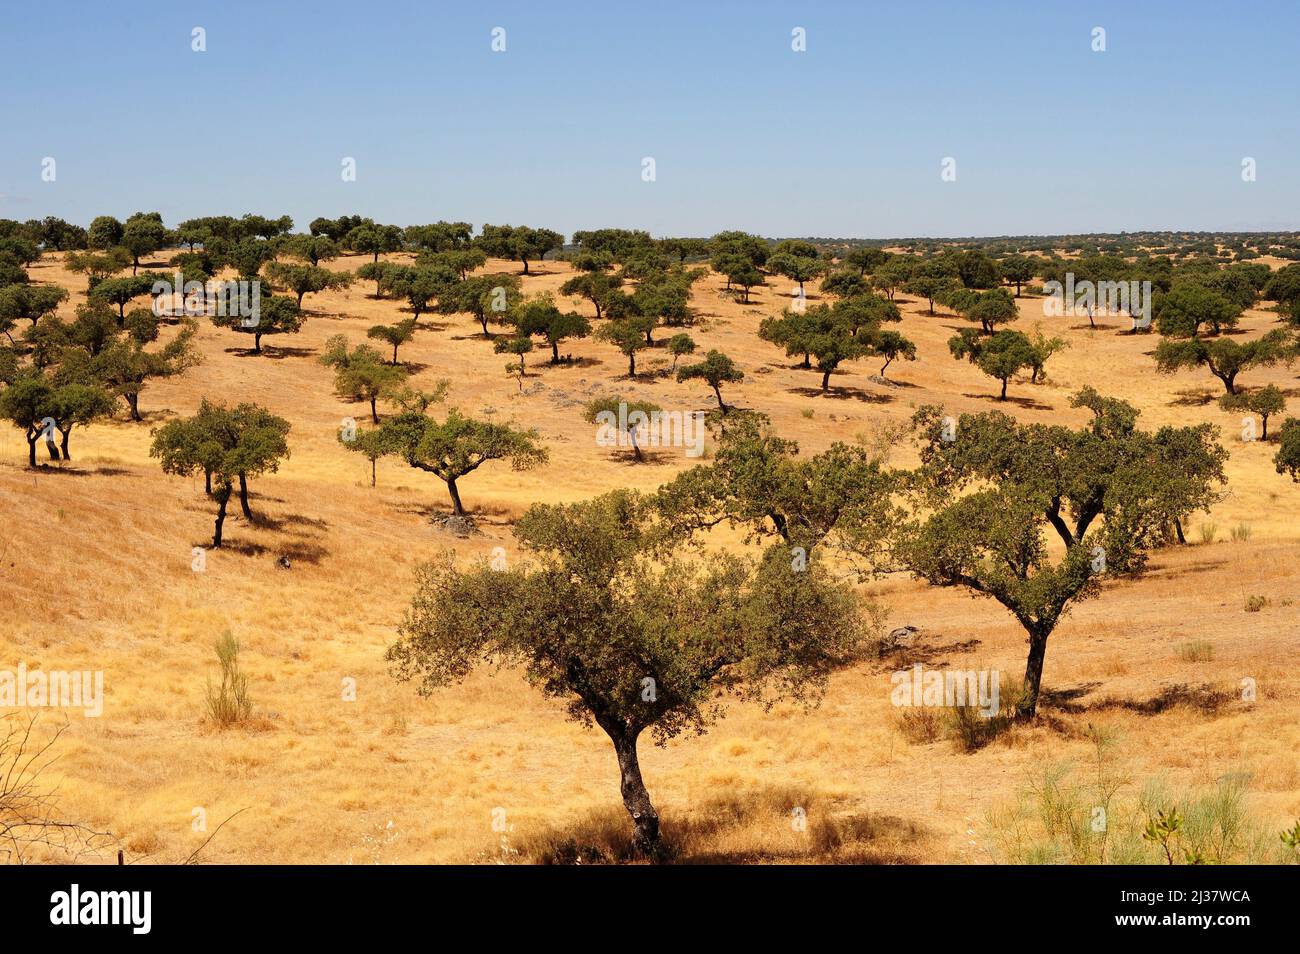 Immergrüne Eiche (Quercus ilex ballota oder Quercus ilx rotundifolia) ist ein immergrüner Baum, der im Mittelmeerraum (iberische Halbinsel und Stockfoto